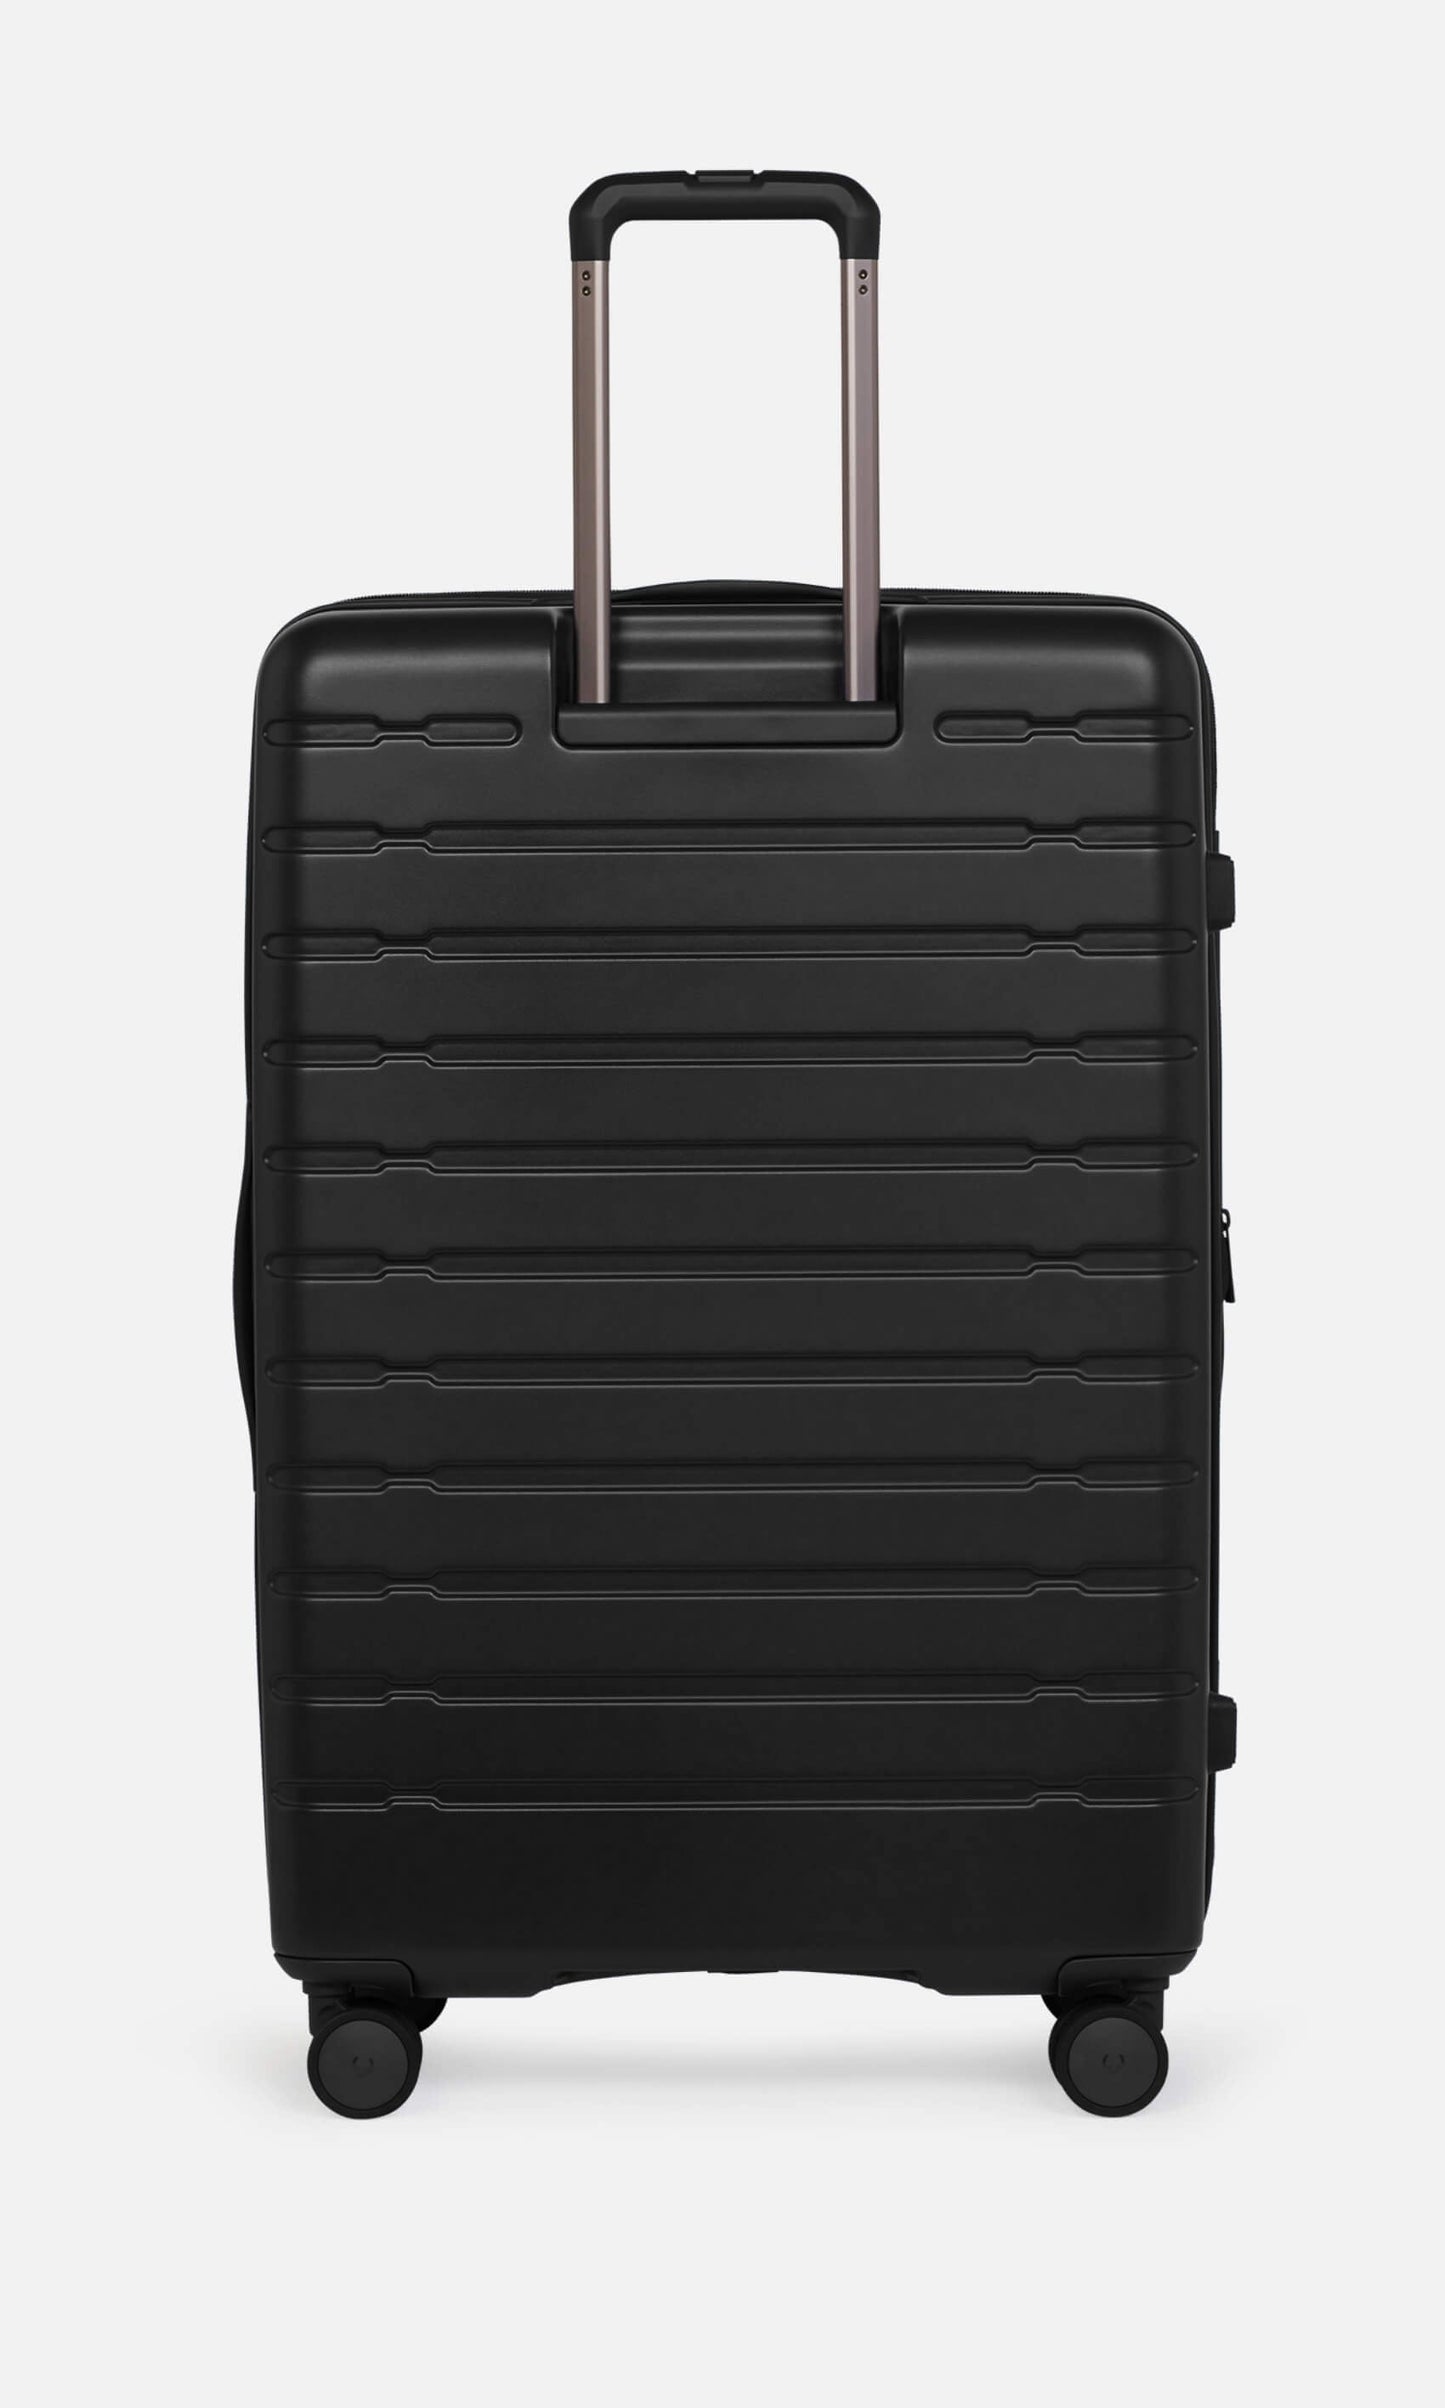 Antler Luggage -  Stamford set in midnight black - Hard Suitcases Stamford Set of 3 Suitcases Black | Hard Luggage | Antler UK